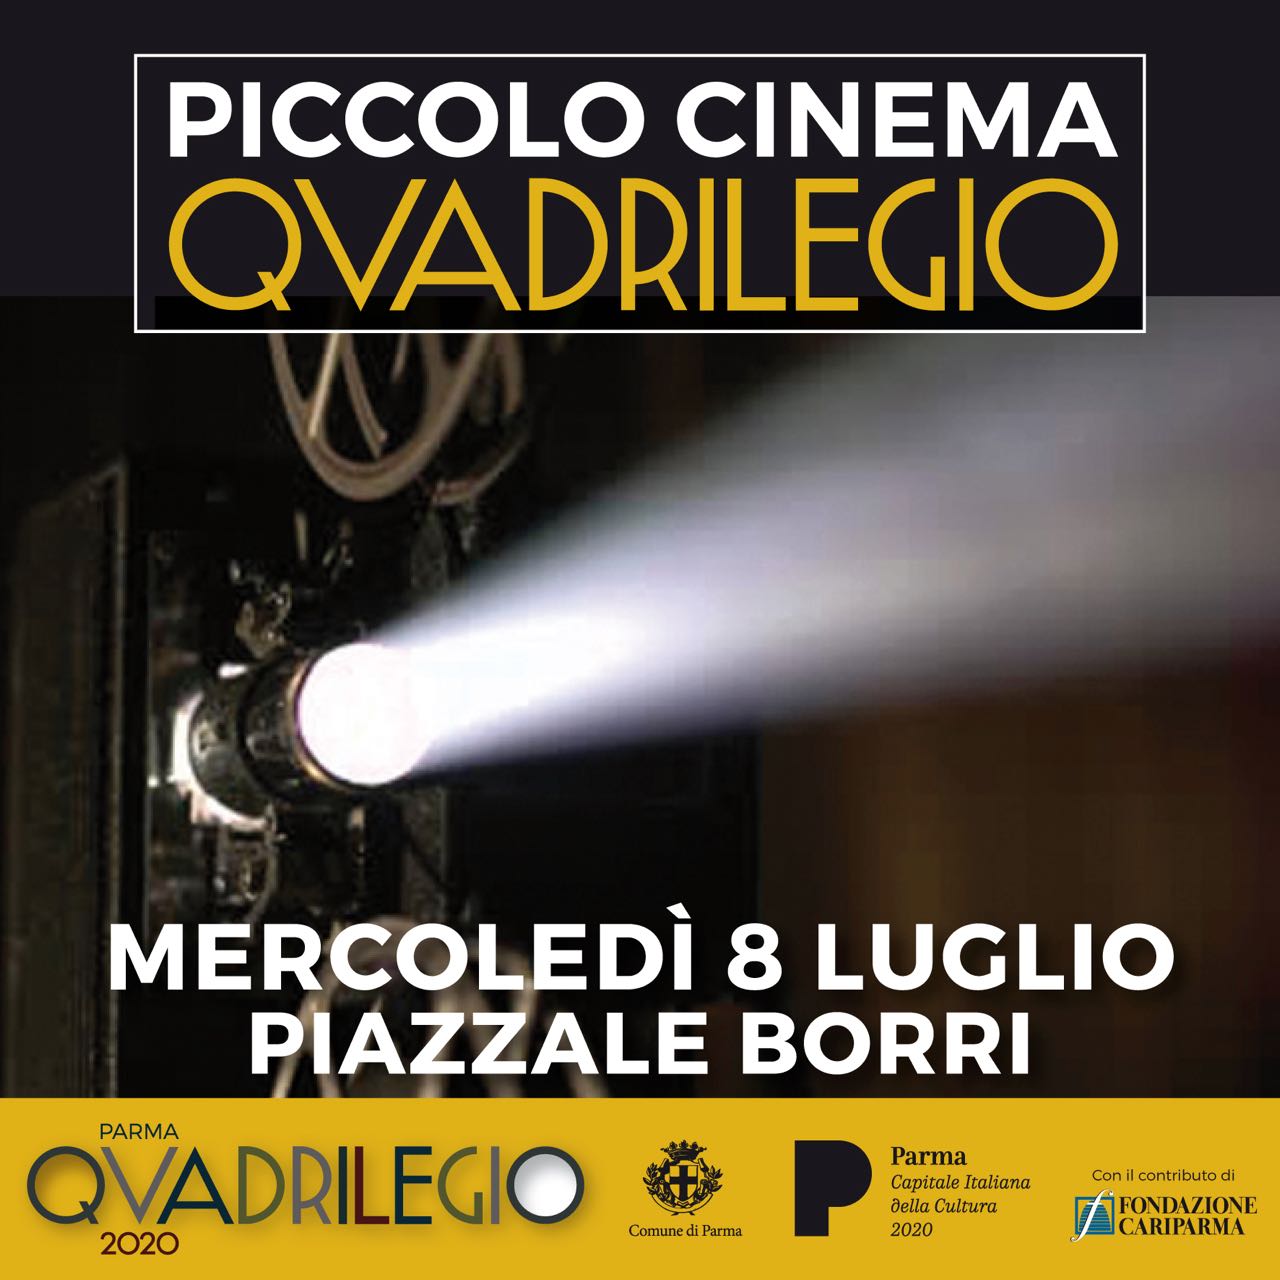 Piccolo_cinema_QUADRILEGIO_1.jpg